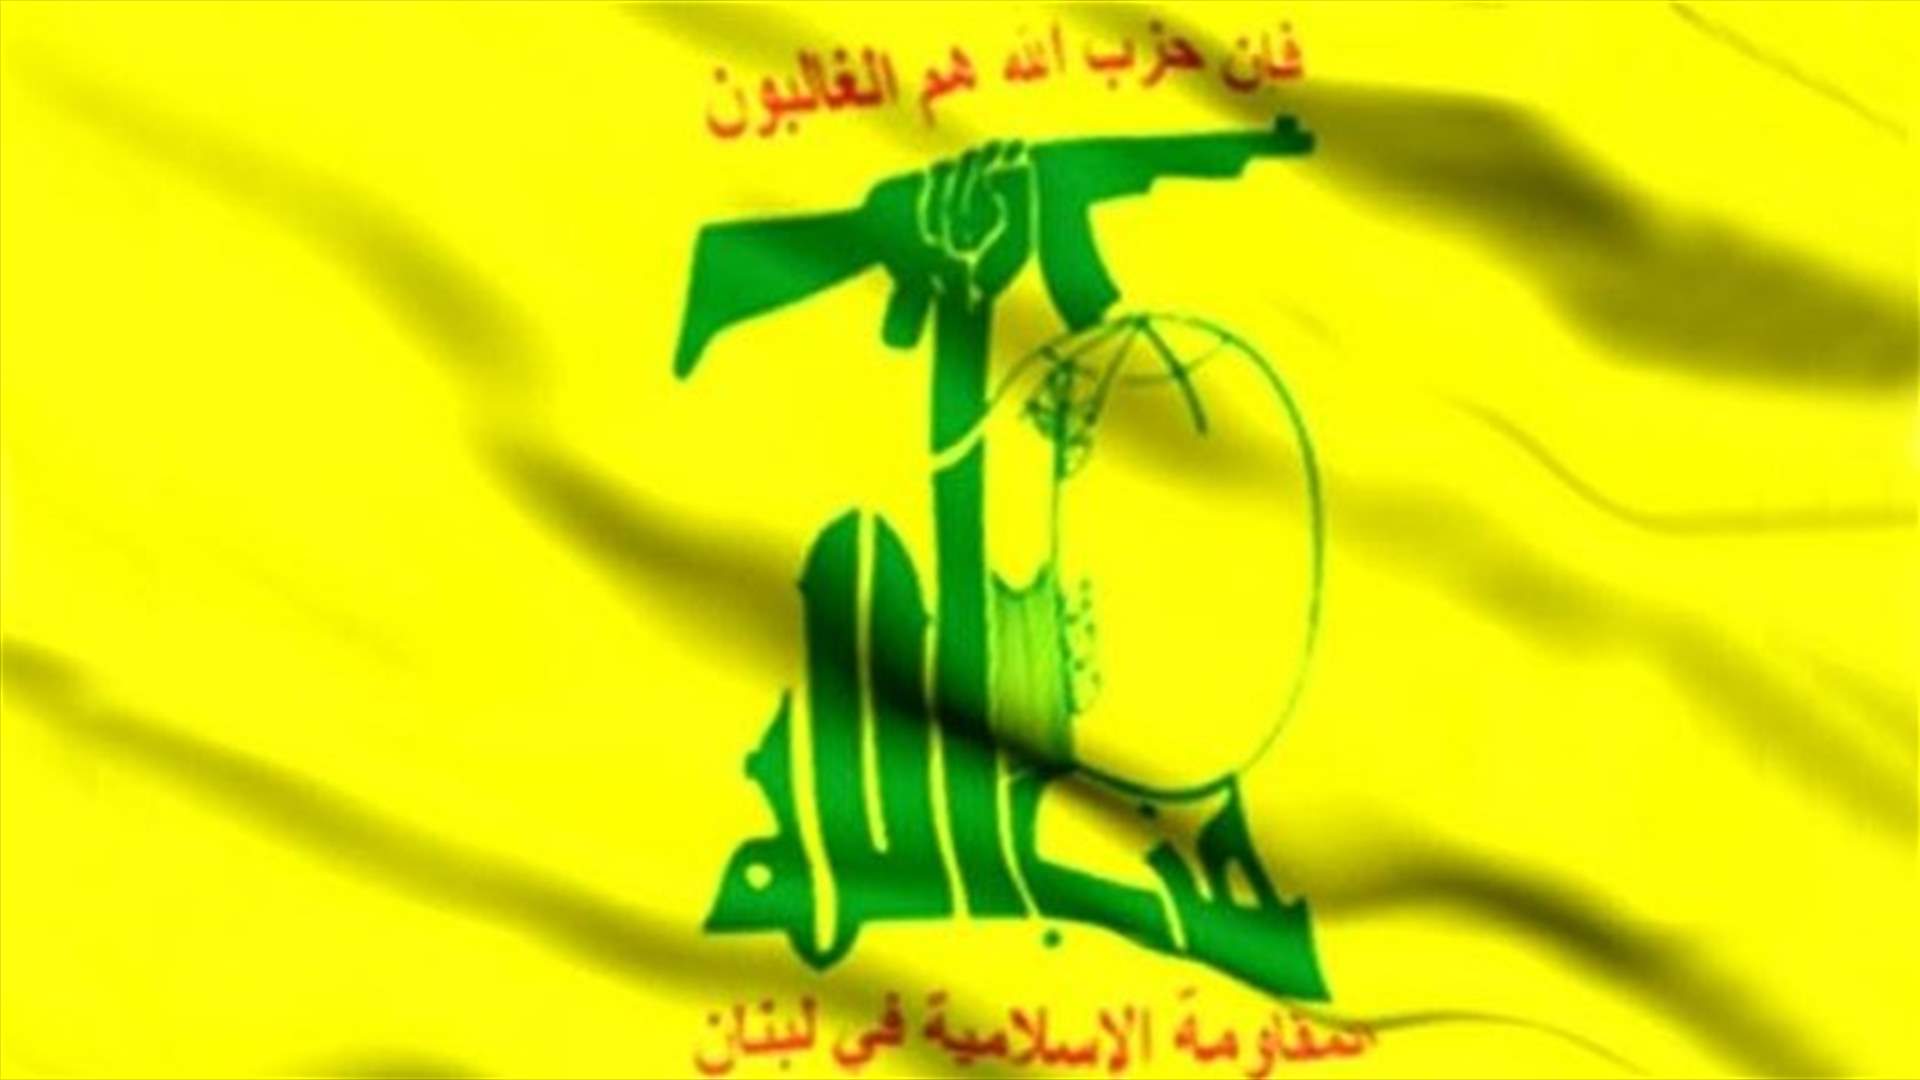 السياسة: حزب الله يتبلغ قرارا ايرانيا بالتشدد وبعدم تسهيل عمل الحكومة